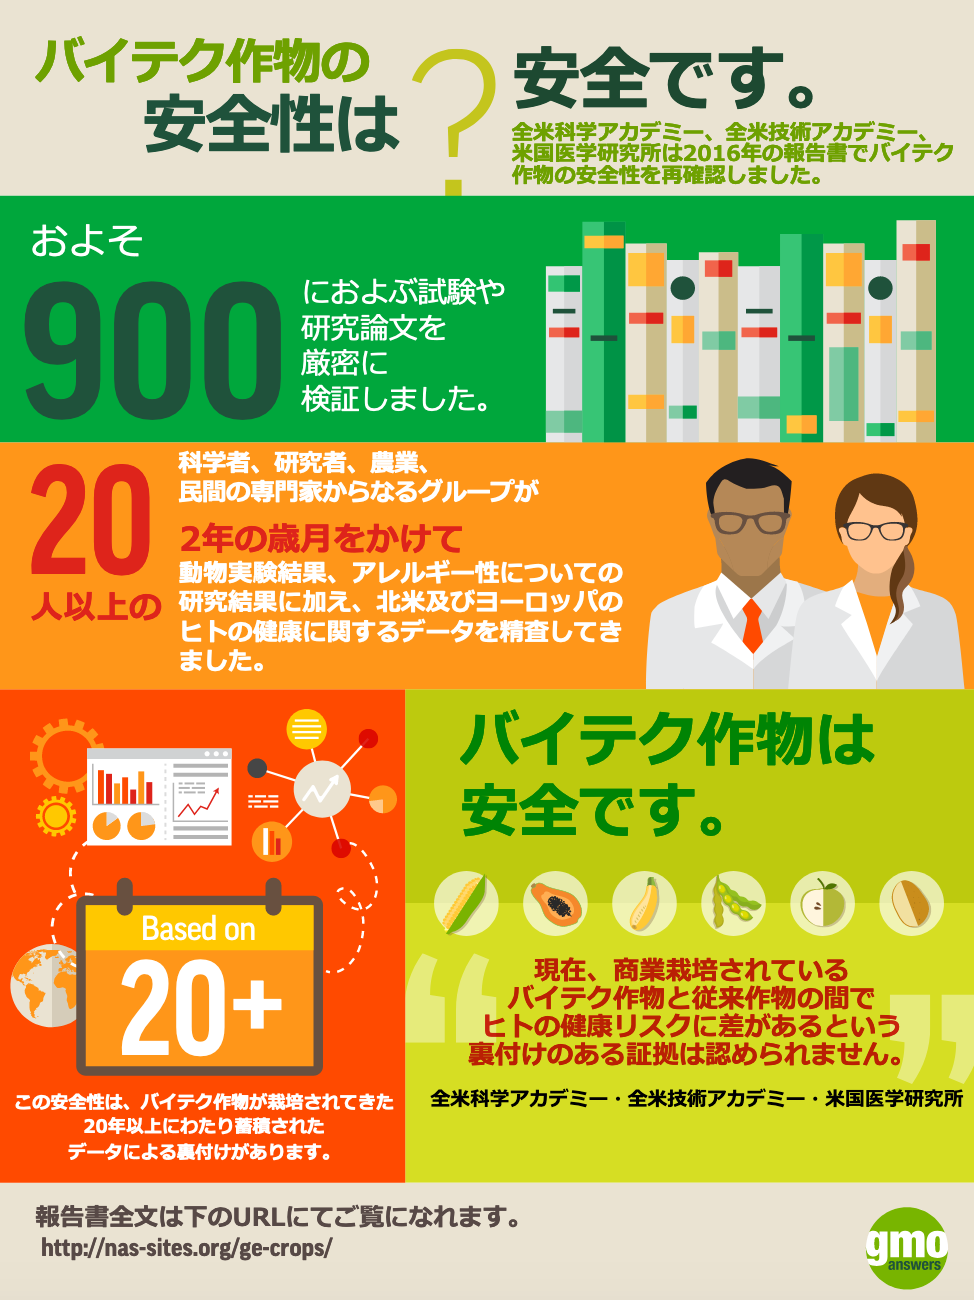 GMO Safety Data Card - JA